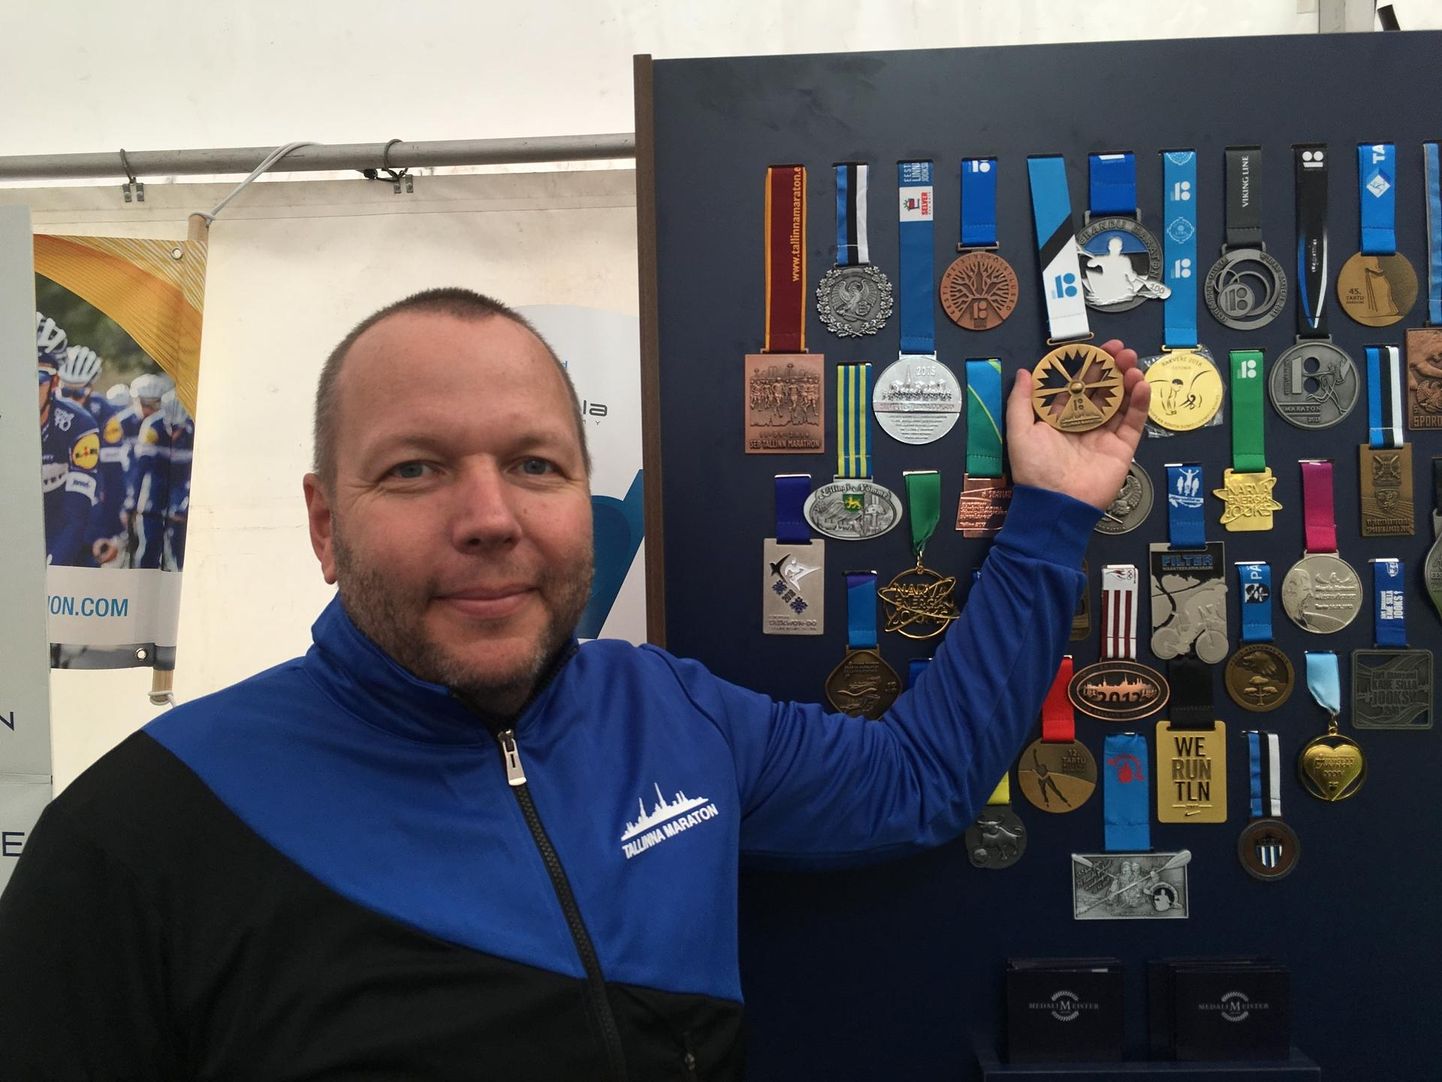 Eelmisel nädalavahetusel toimunud Tallinna Maratonil ja Sügisjooksu medalid ja särgid disainis Priit Verlin. Sündmuspaigal oli ka näitus tema medaliloomingust.